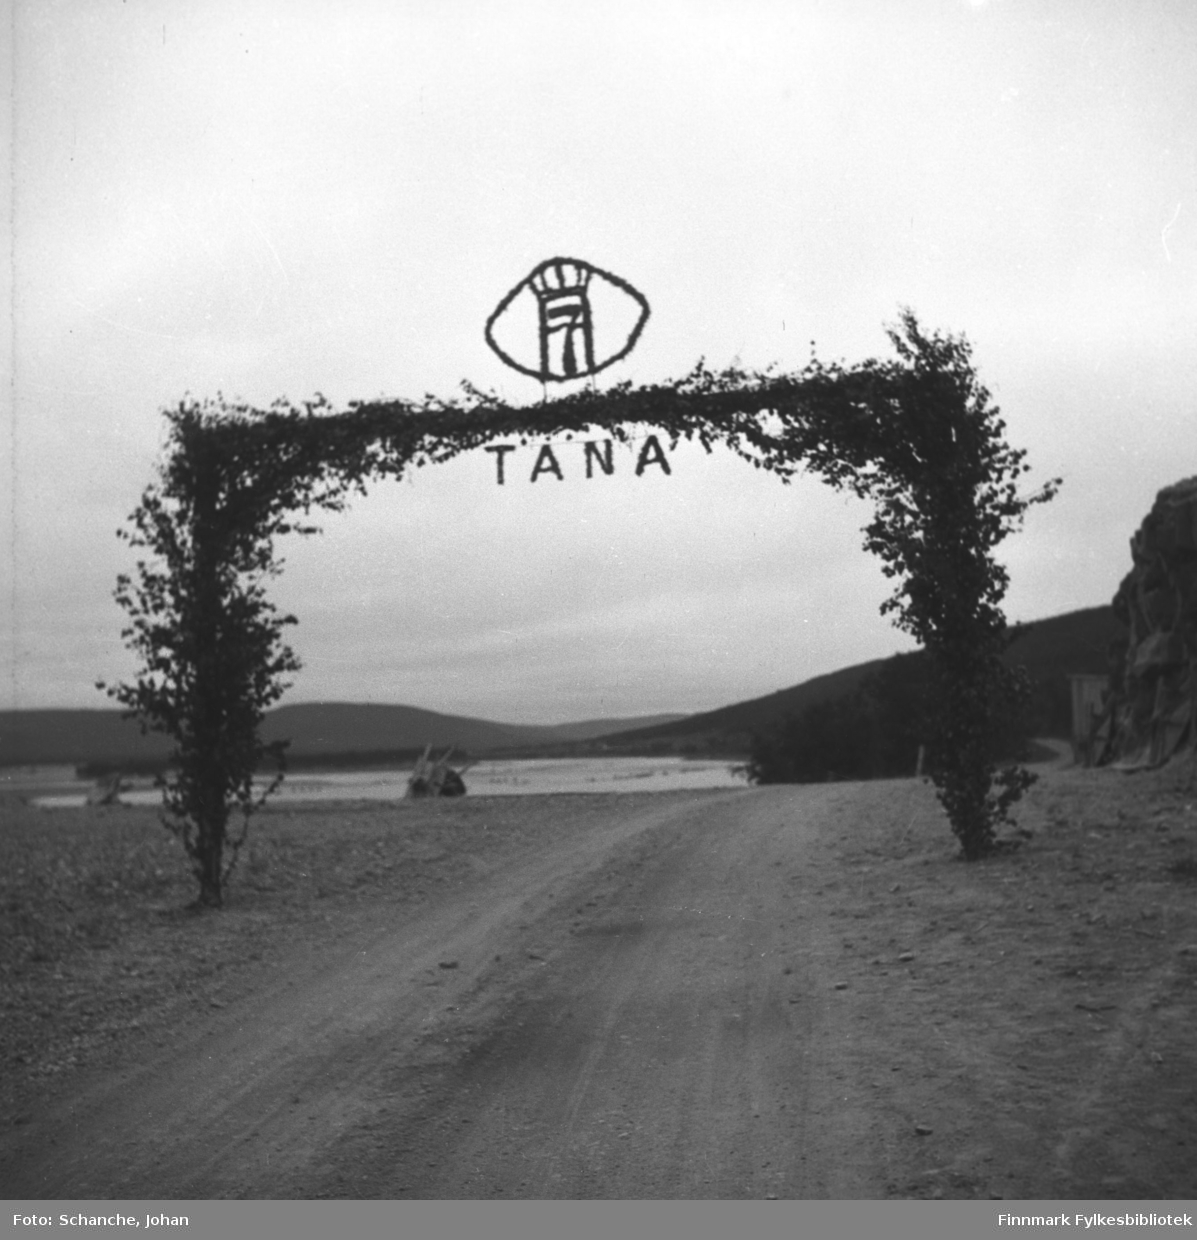 Kongebesøk i 1946, Kong Haakon VII besøker Tana. Kongen reiste fra Vadsø og stoppet i Vestre Jakobselv, Nyborgmoen, Skippagurra og Langnes der han spiste aftens- laks og rabarbragrøt. Vi ser bjørkeportalen (porten) over veien i Tana. Øverst på bjørkeportalen står ordet TANA og Tanas våpen. Vi ser Tanaelva i bakgrunnen.